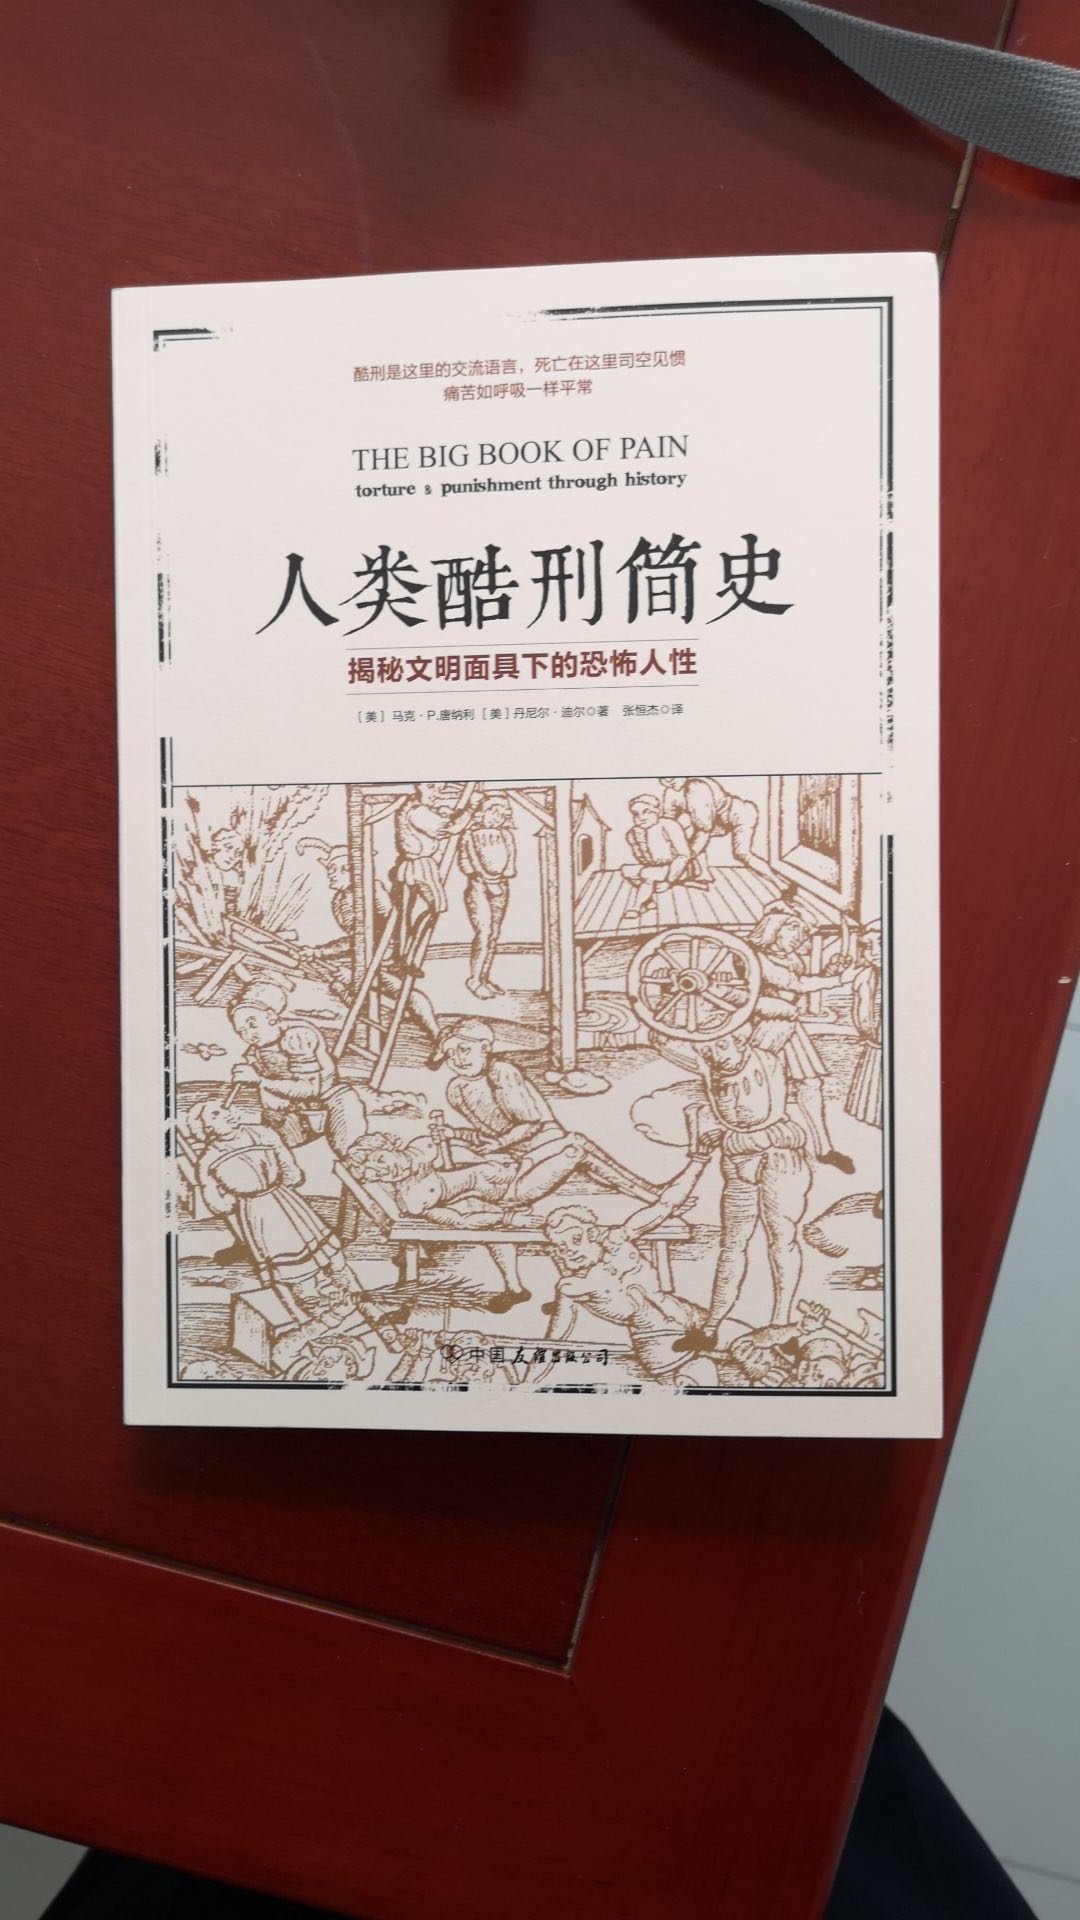 一本书粗略讲述中国历史。有点看头。